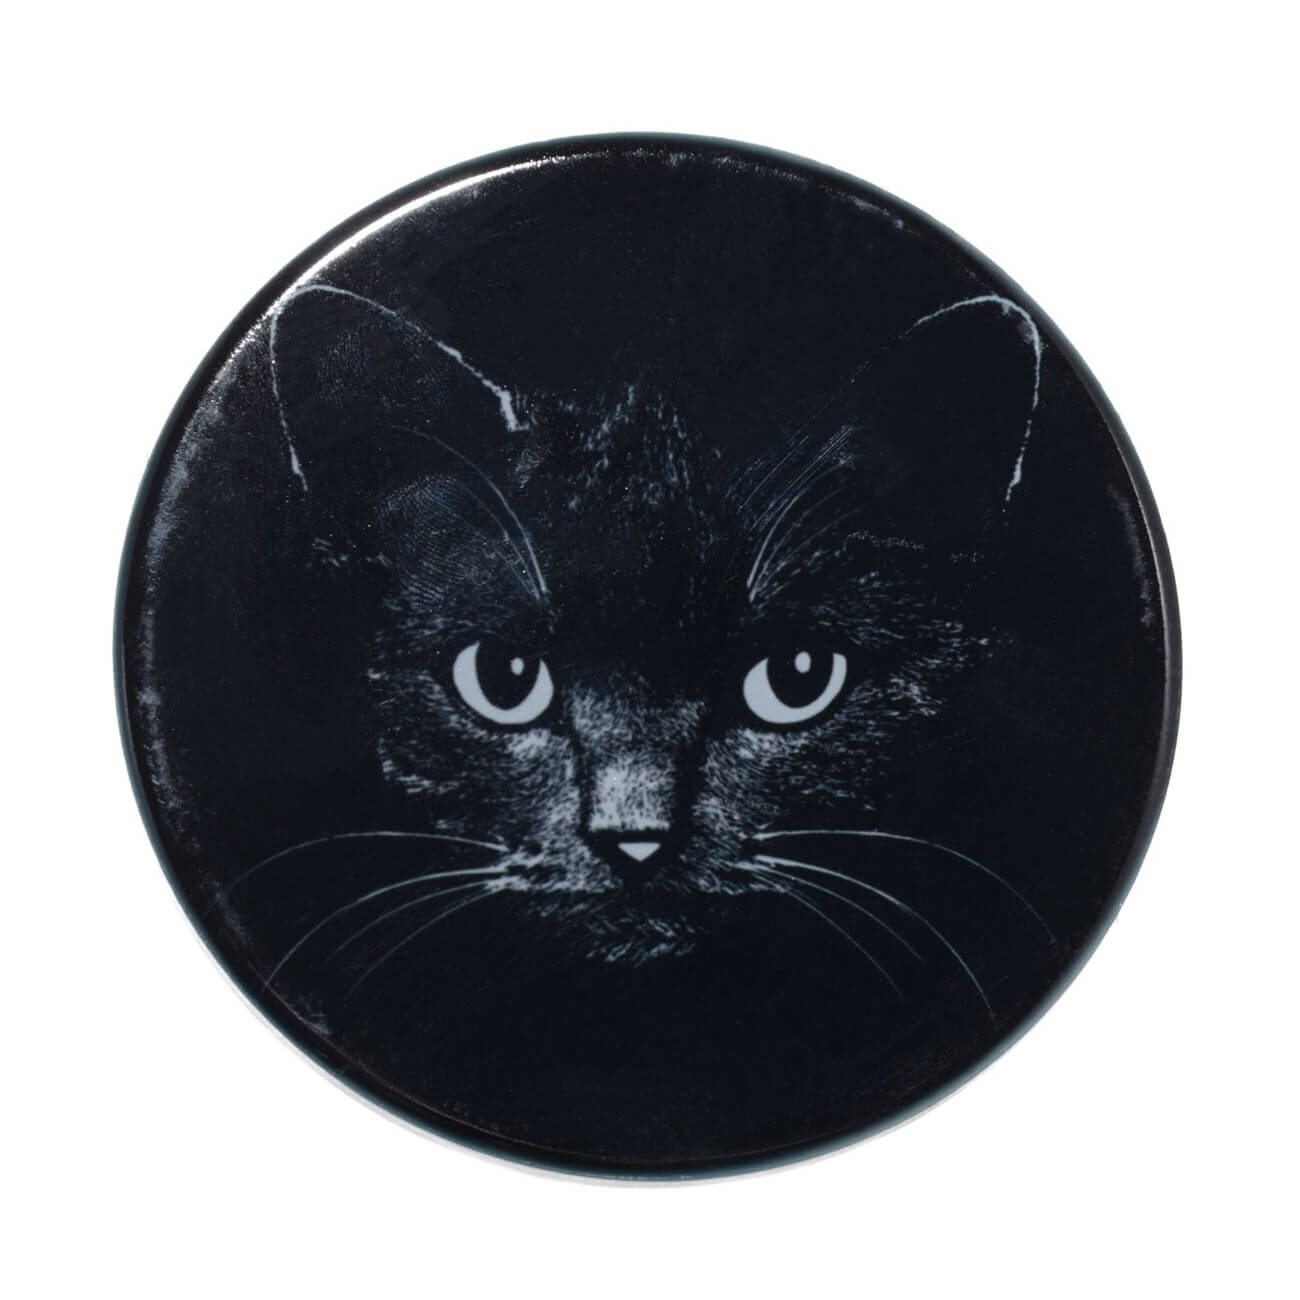 Подставка под кружку, 11x11 см, керамика/пробка, круглая, черная, Ночной кот, Cat night подставка для бутылки доляна